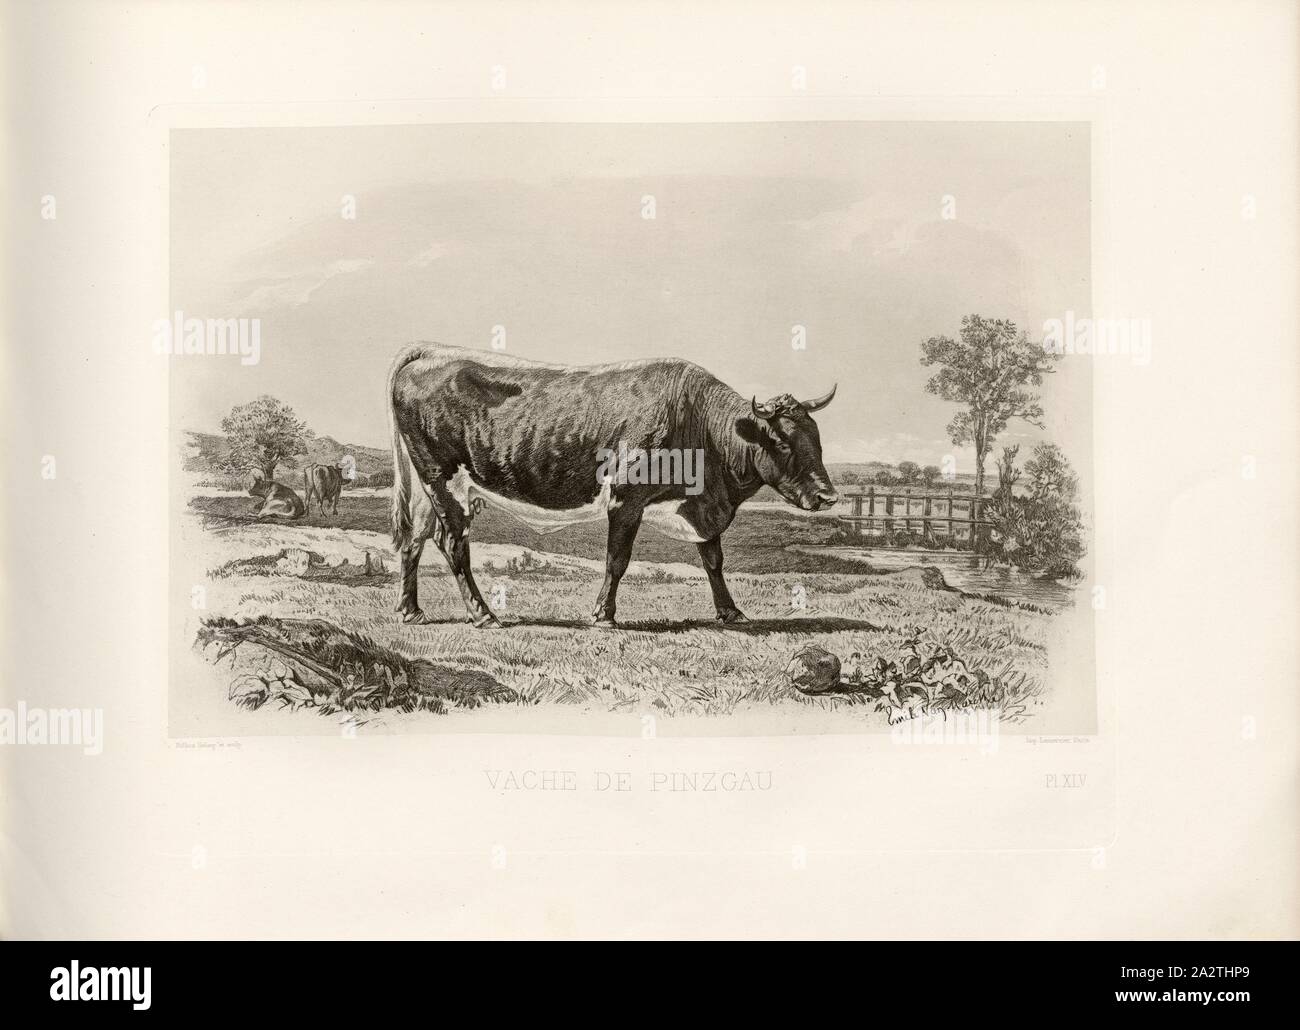 Pinzgau cow, Austrian cattle breed, cow, signed: Phot., Nadar jne; Emile Van Marcke; Reefaut Heliog., et sculp, Pl. XLV, S. 107, Tournachon, Adrien Alban (Phot.); Marcke, Emile van; Riffaut, A. (heliog. et sc.), Emile Baudement: Les races bovines au concours universel agricole de Paris en 1856: études zootechniques. Bd. 2. Paris: Imprimerie Impériale, MDCCCLXI [1861 Stock Photo